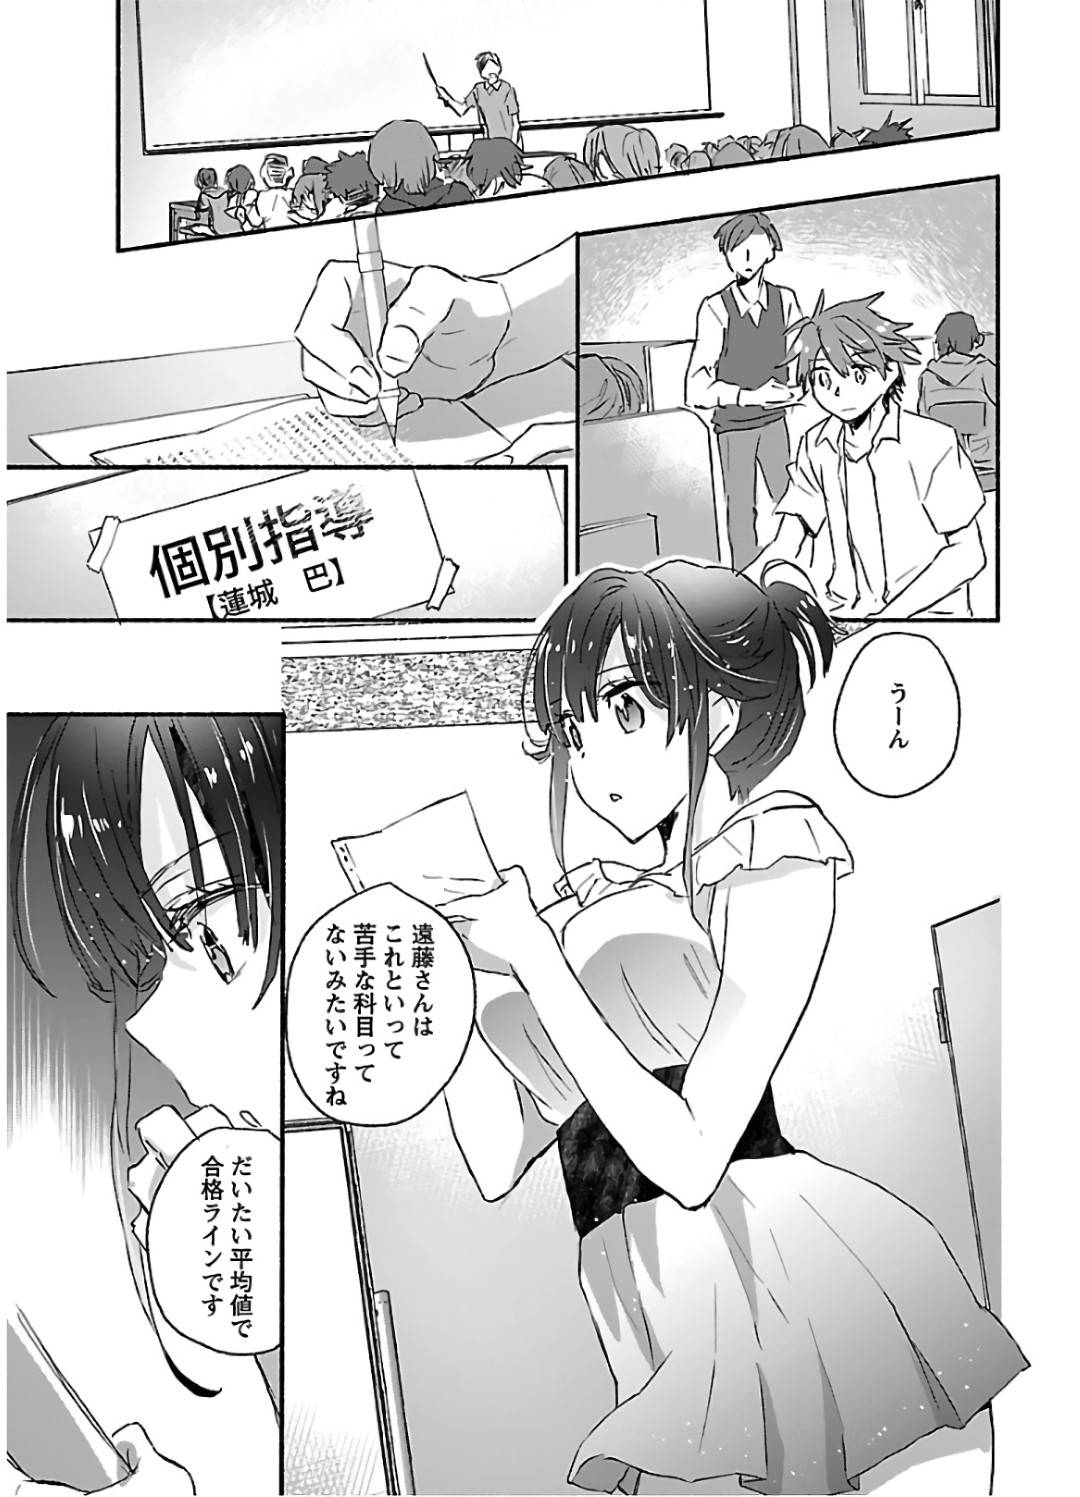 【エロ漫画】リゾート地で勉強合宿に来ていた遠藤は、勉強後、露天風呂がある事を知り蓮城の入浴姿を覗くとセックスする妄想をしてしまう【ジェームスほたて】